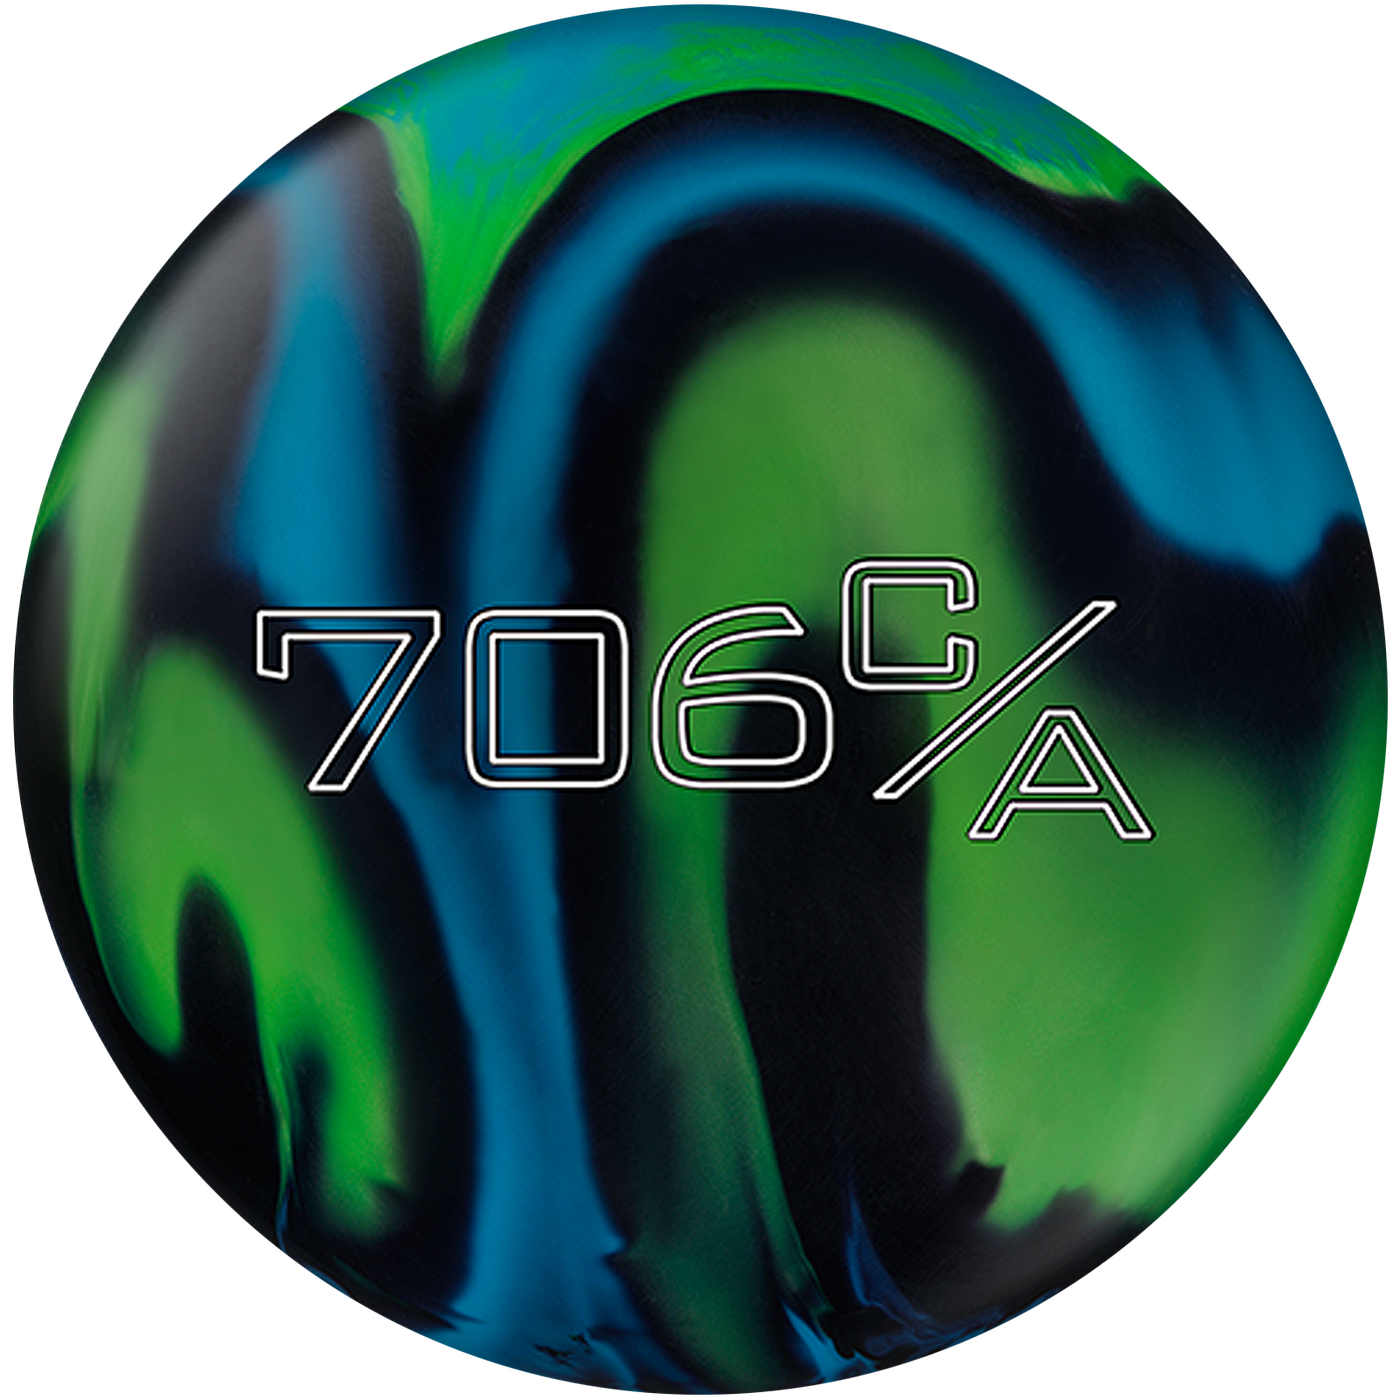 706C/A Bowling Ball